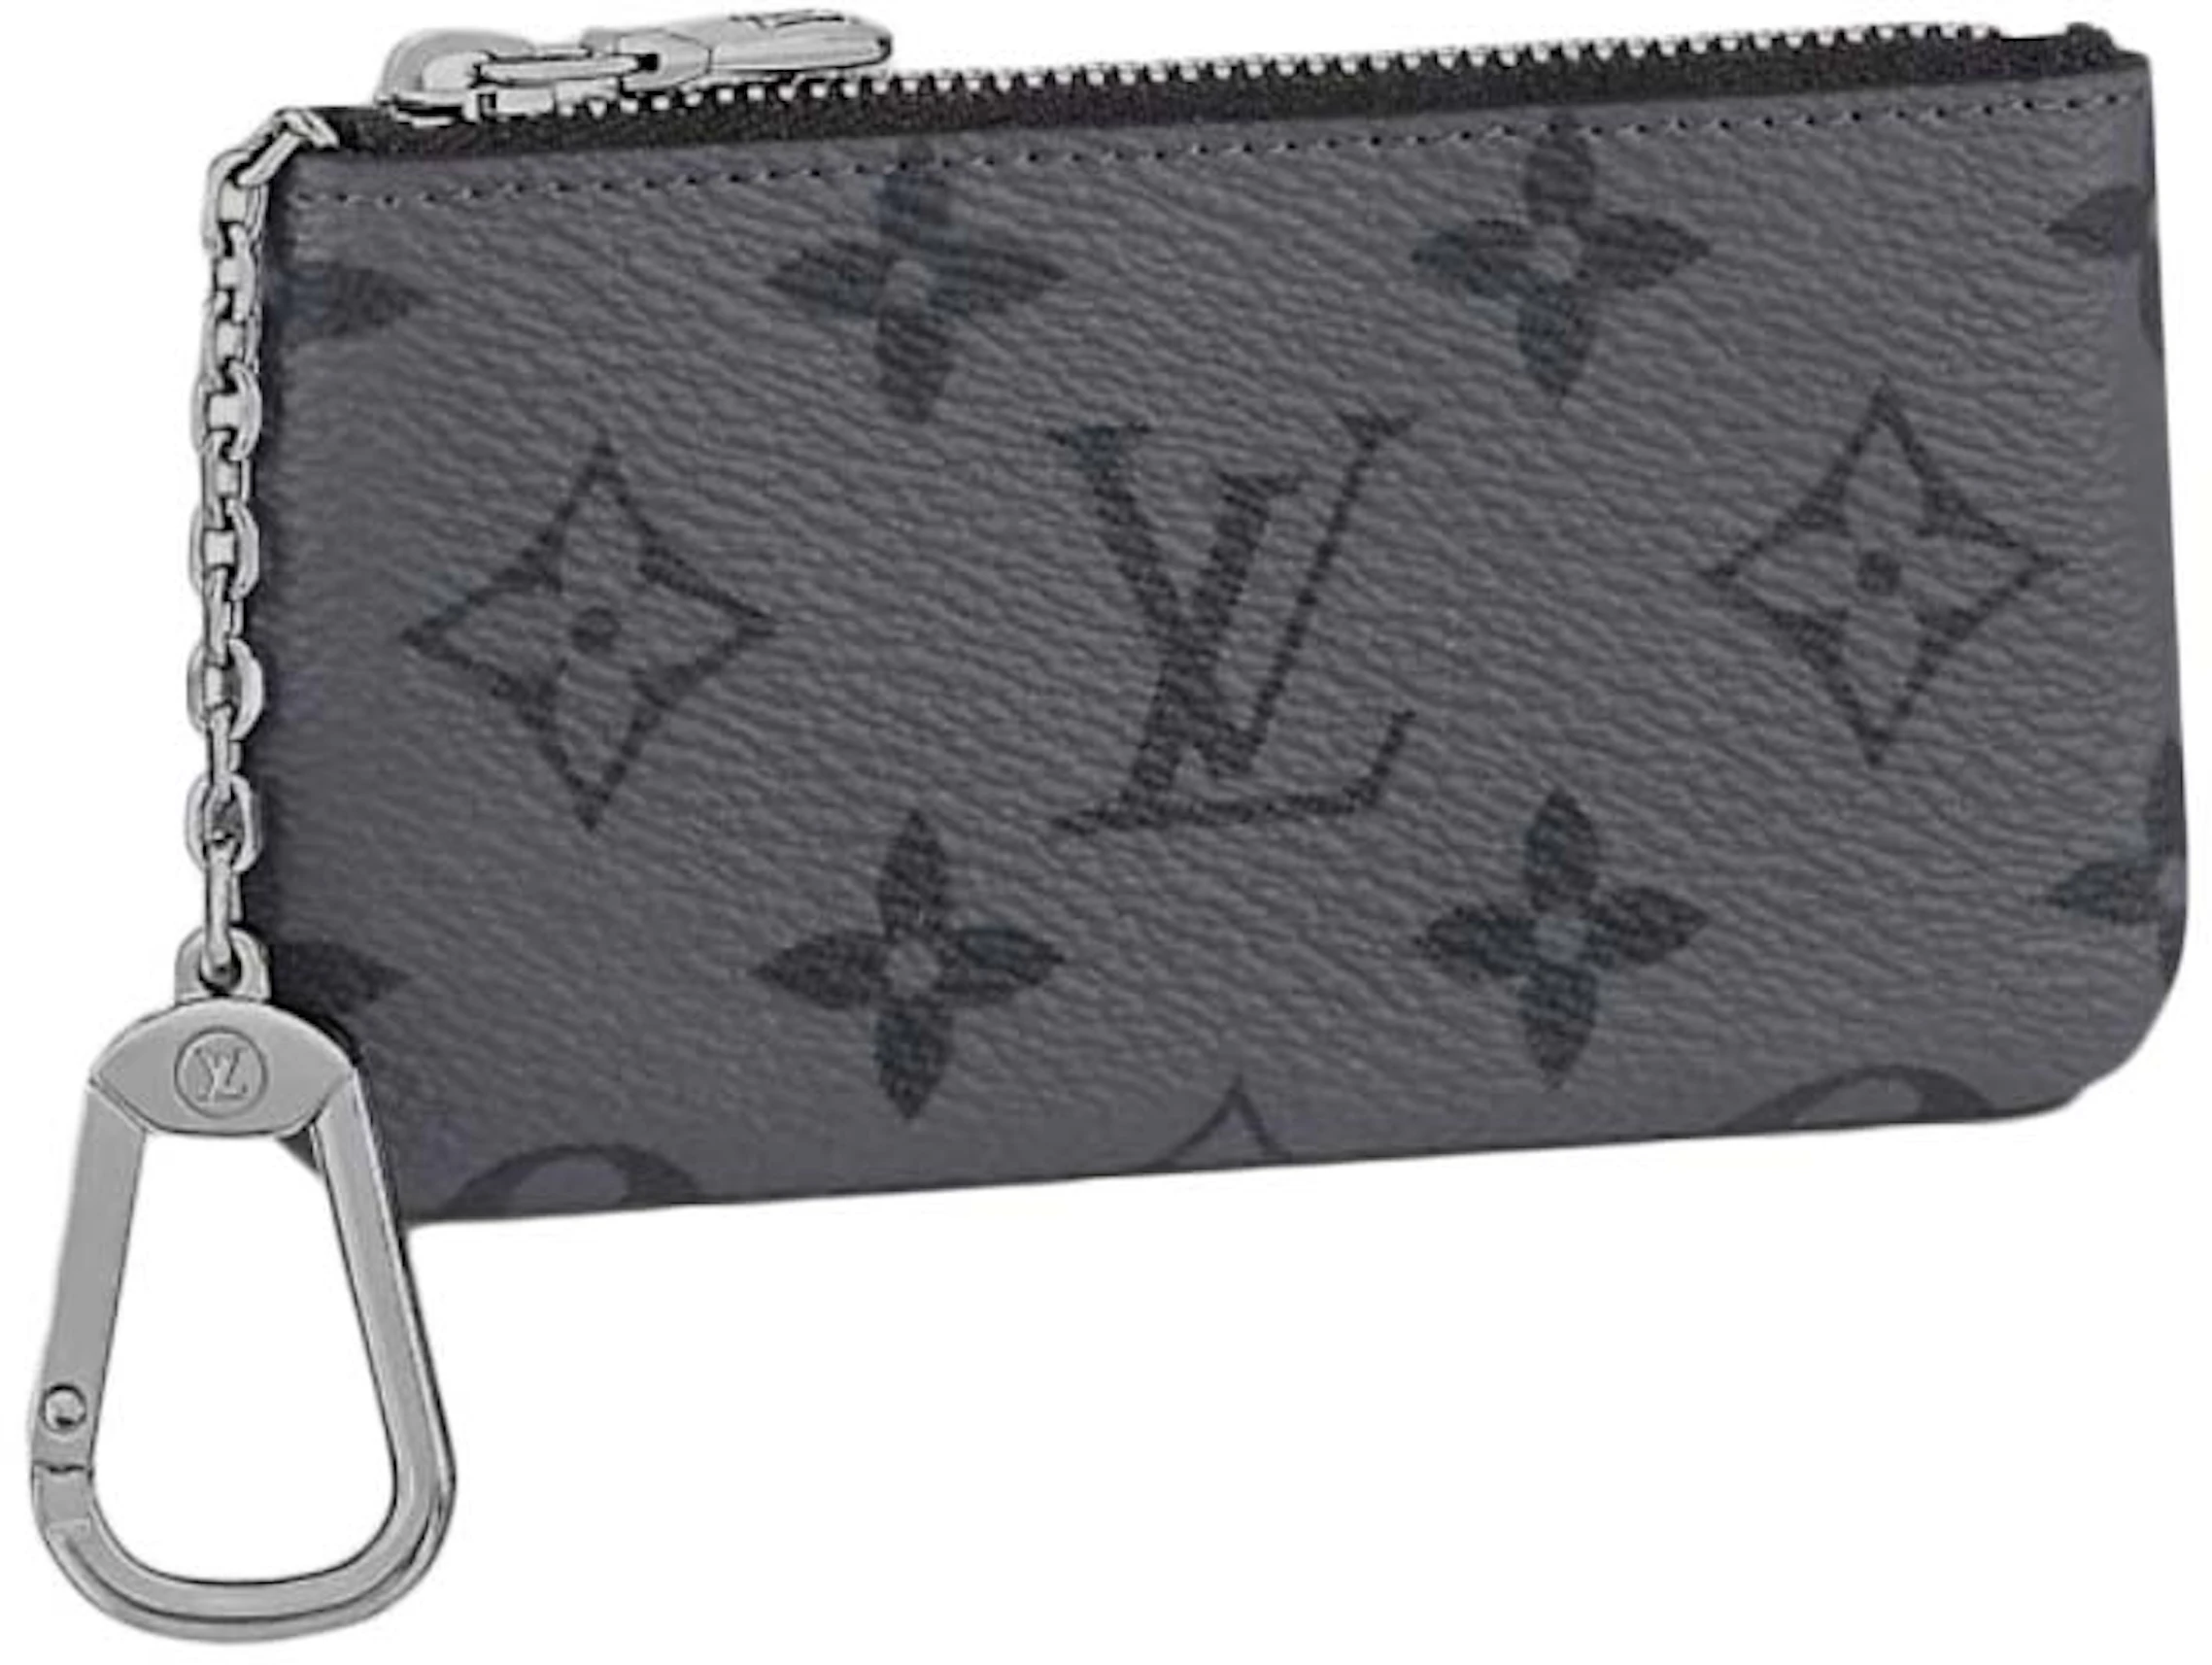 Authentic] Louis Vuitton Pochette Cles Aerogram Leather Key Pouch  M81031--BLACK